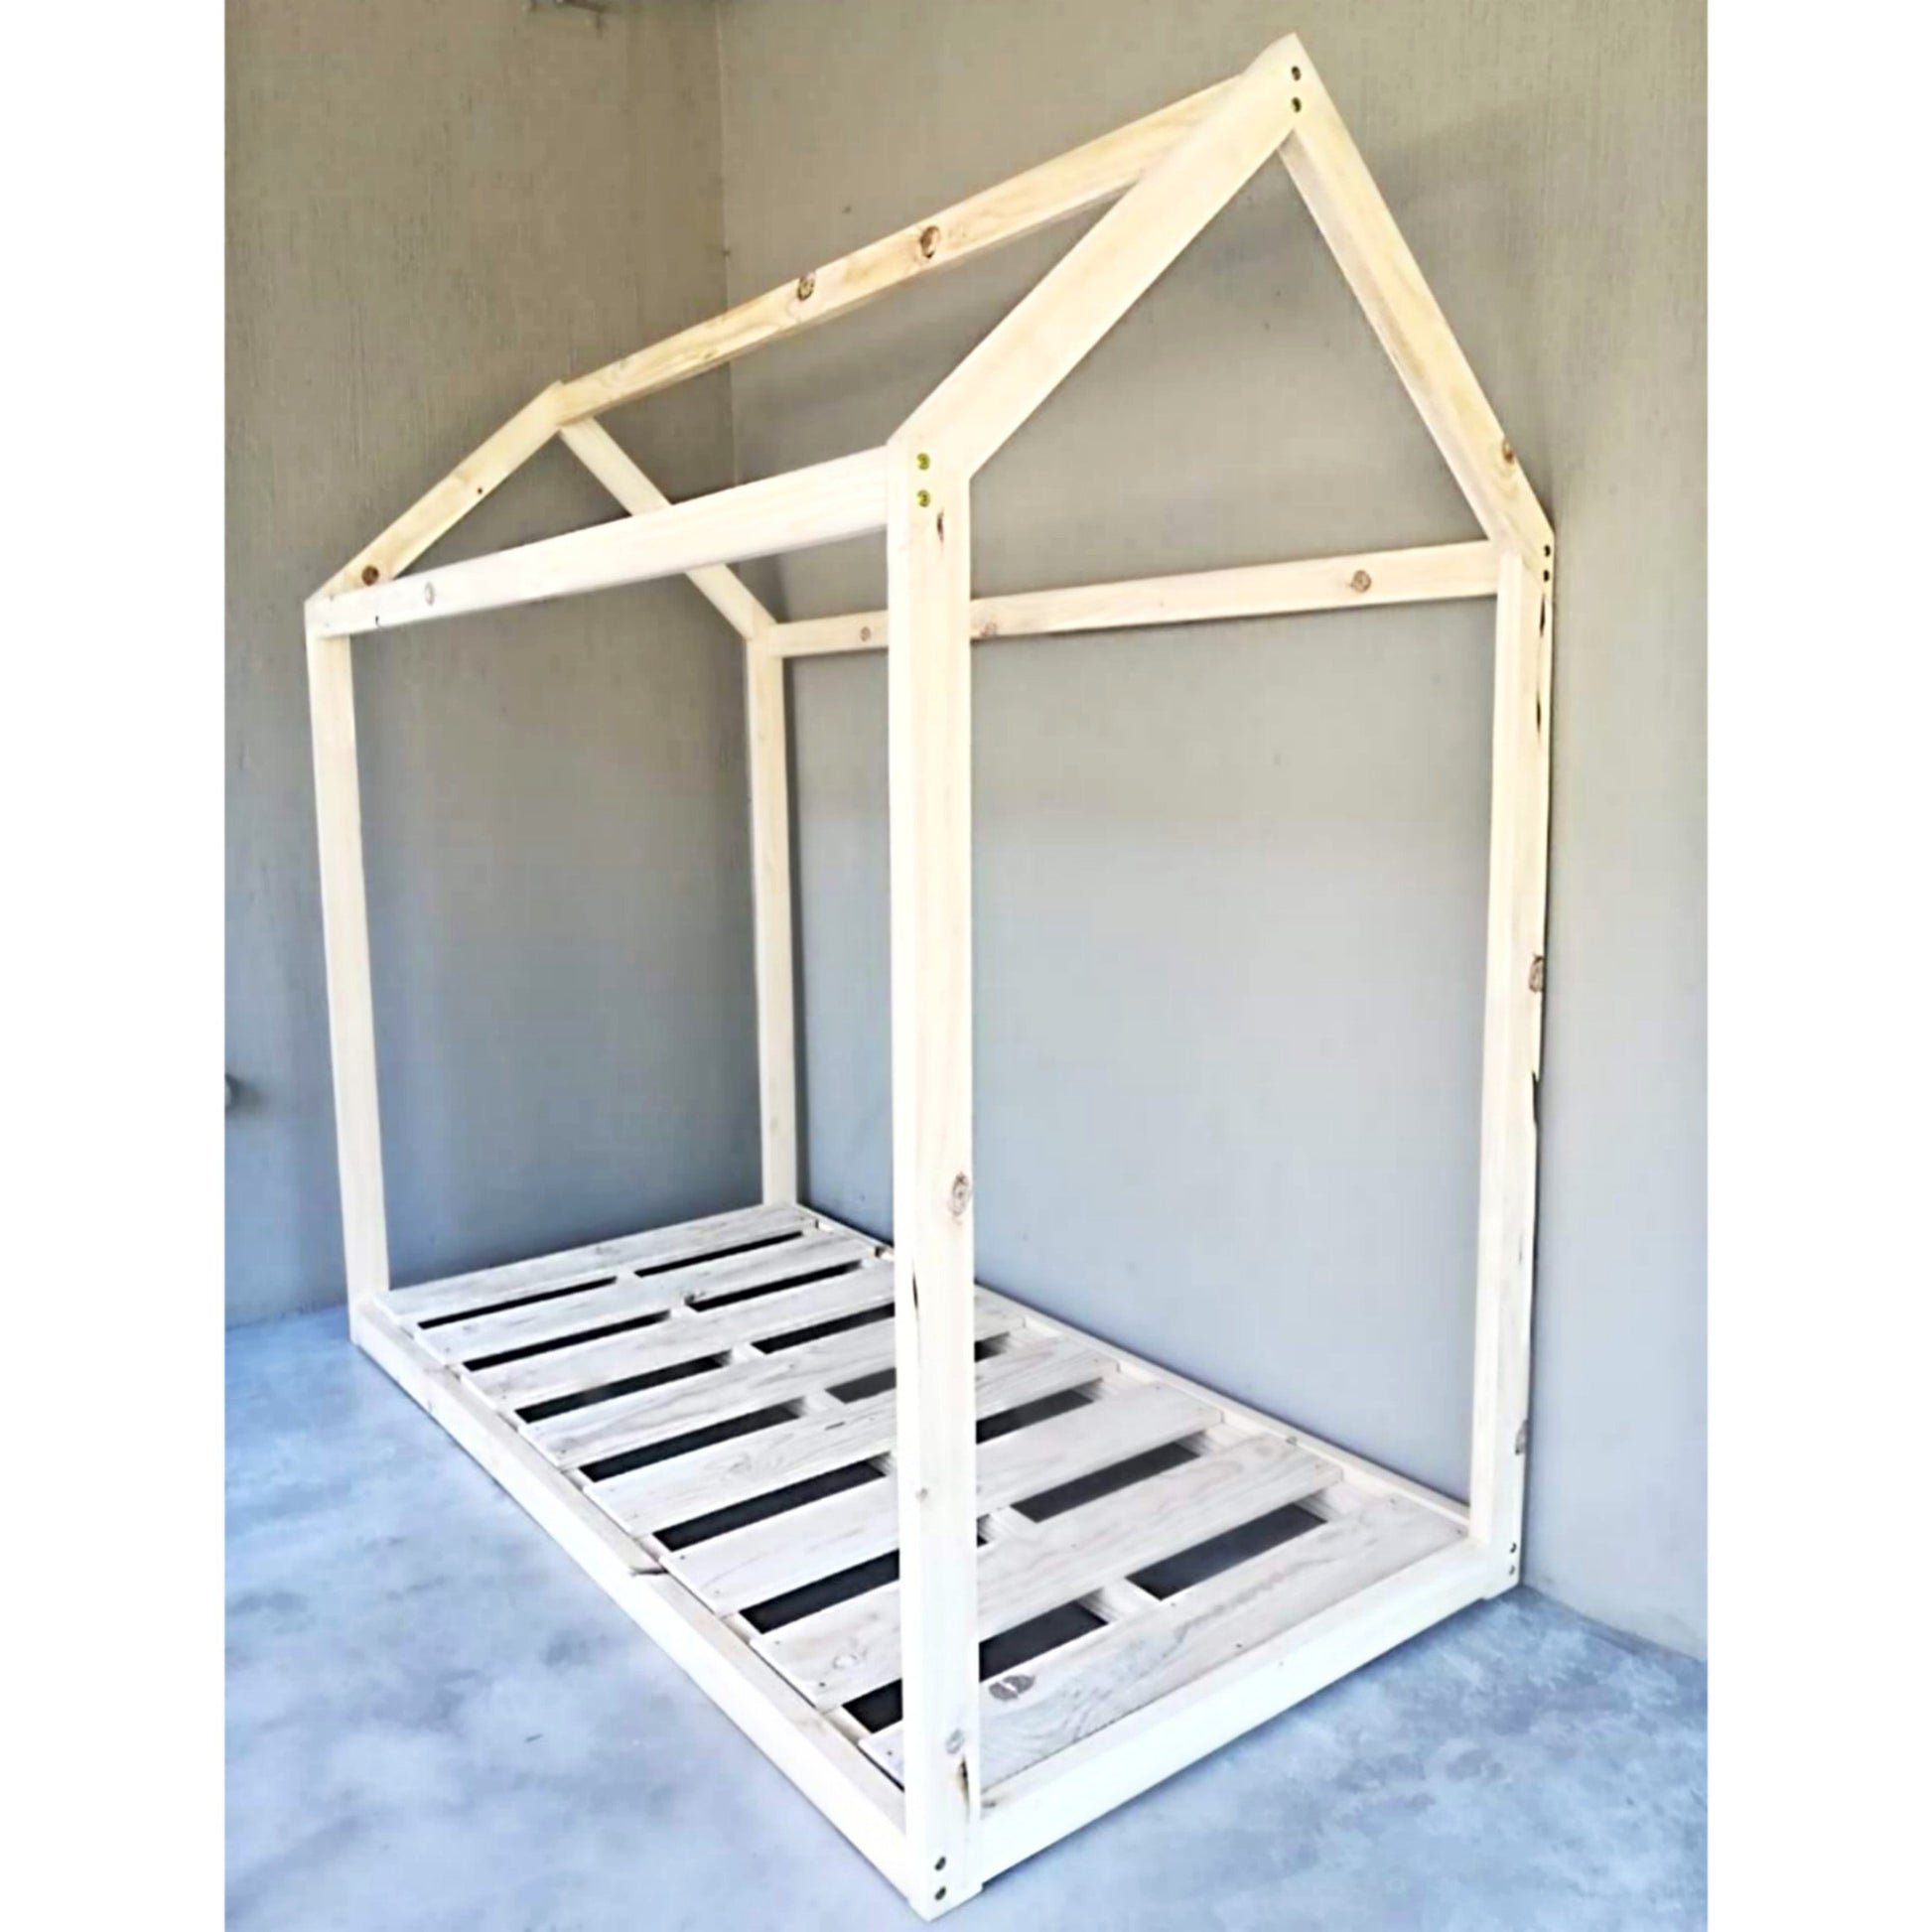 House Bed Frame - Furniture